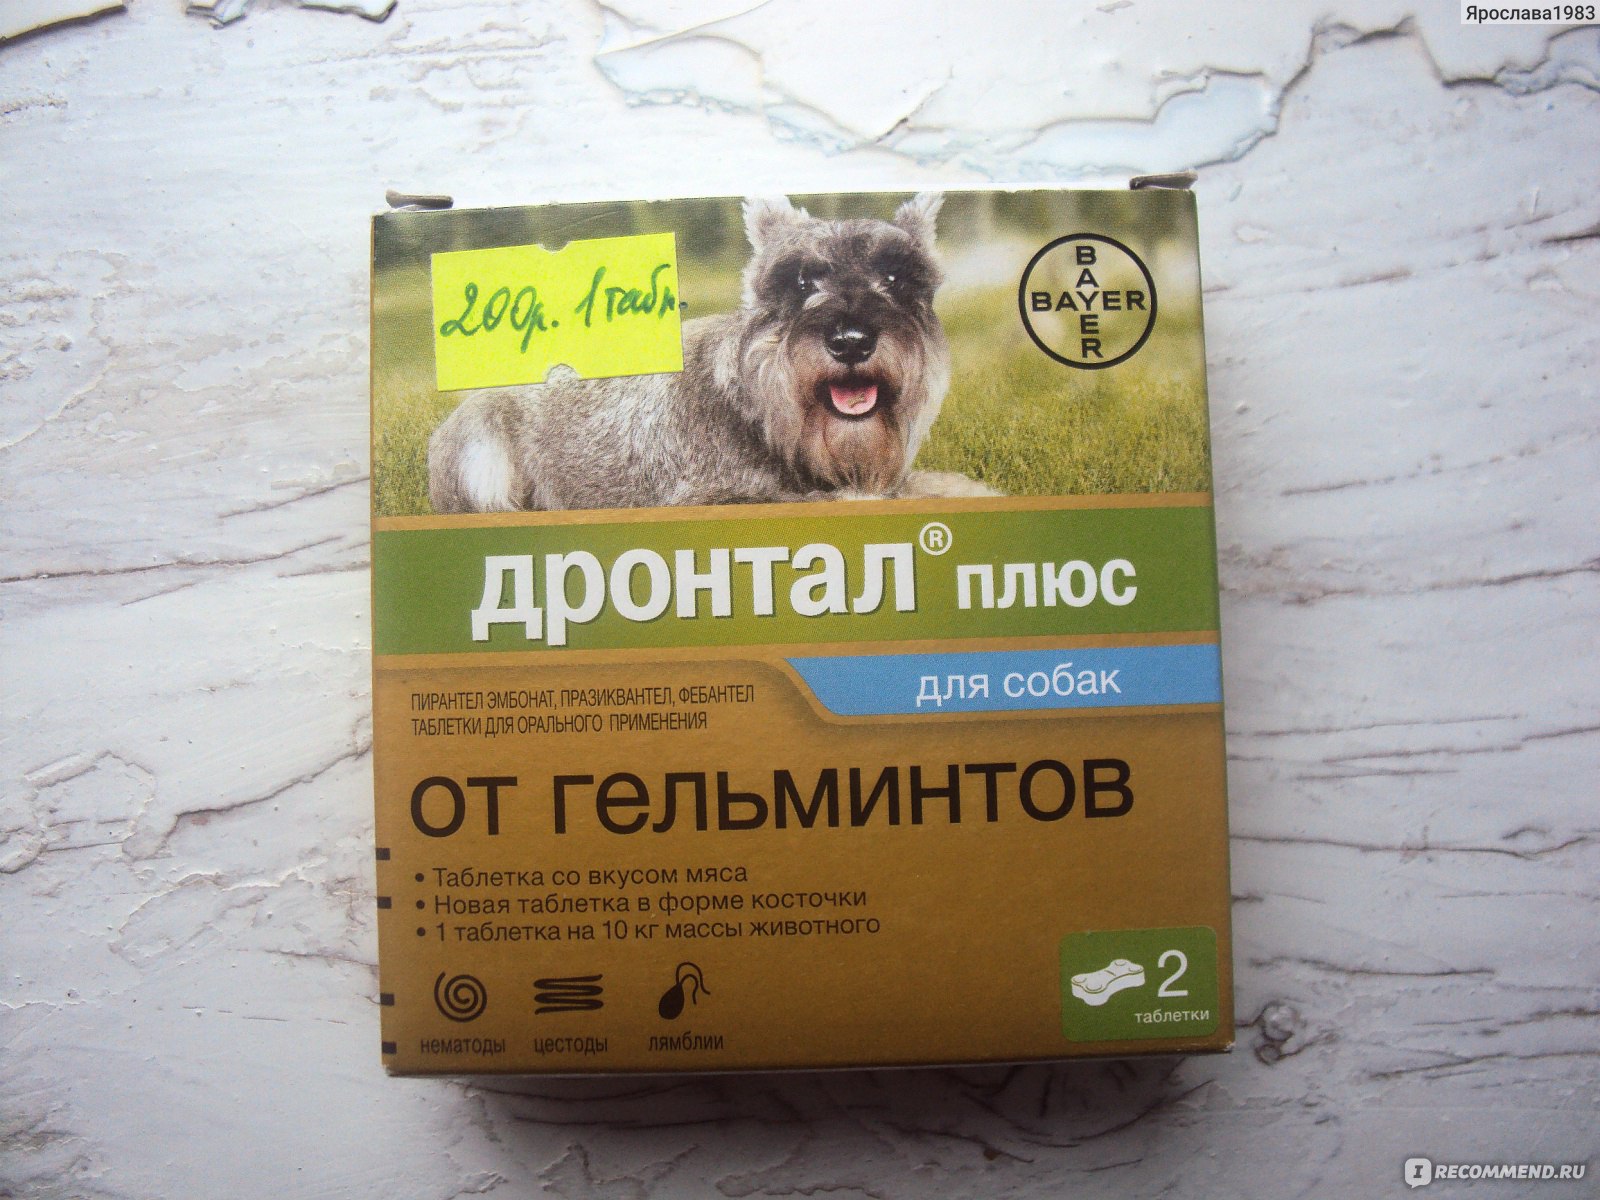 Антигельминтики Bayer Дронтал + со вкусом мяса для собак фото